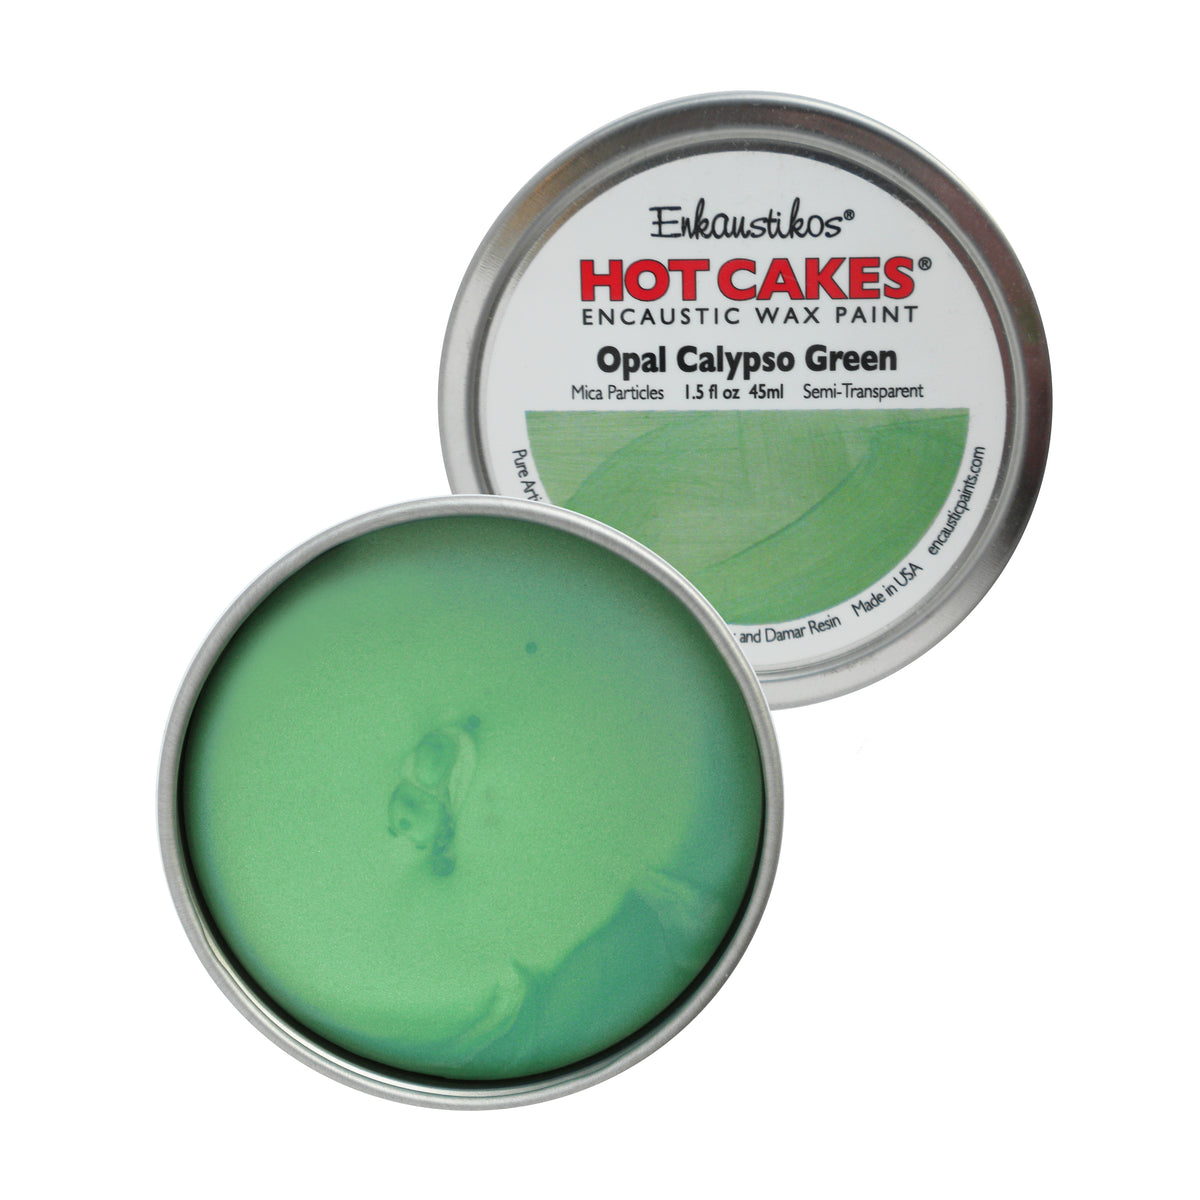 Opal Calypso Green Hot Cakes